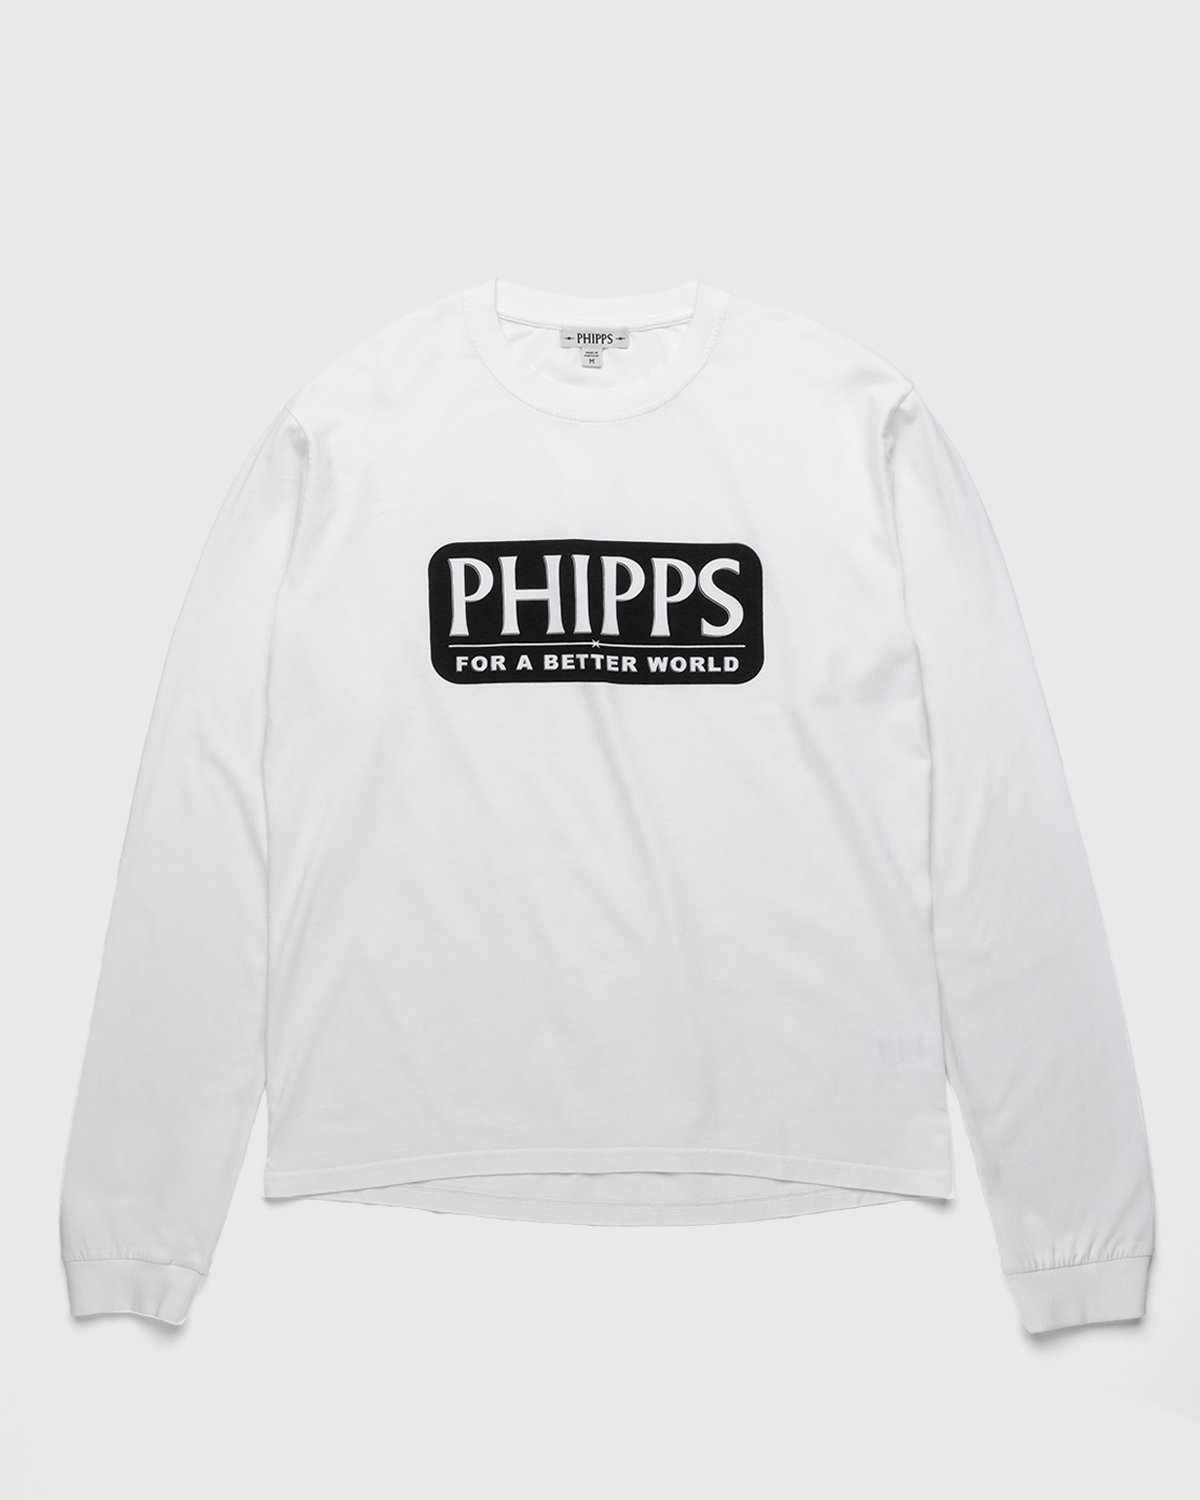 Phipps - Logo Longsleeve White - Clothing - White - Image 1